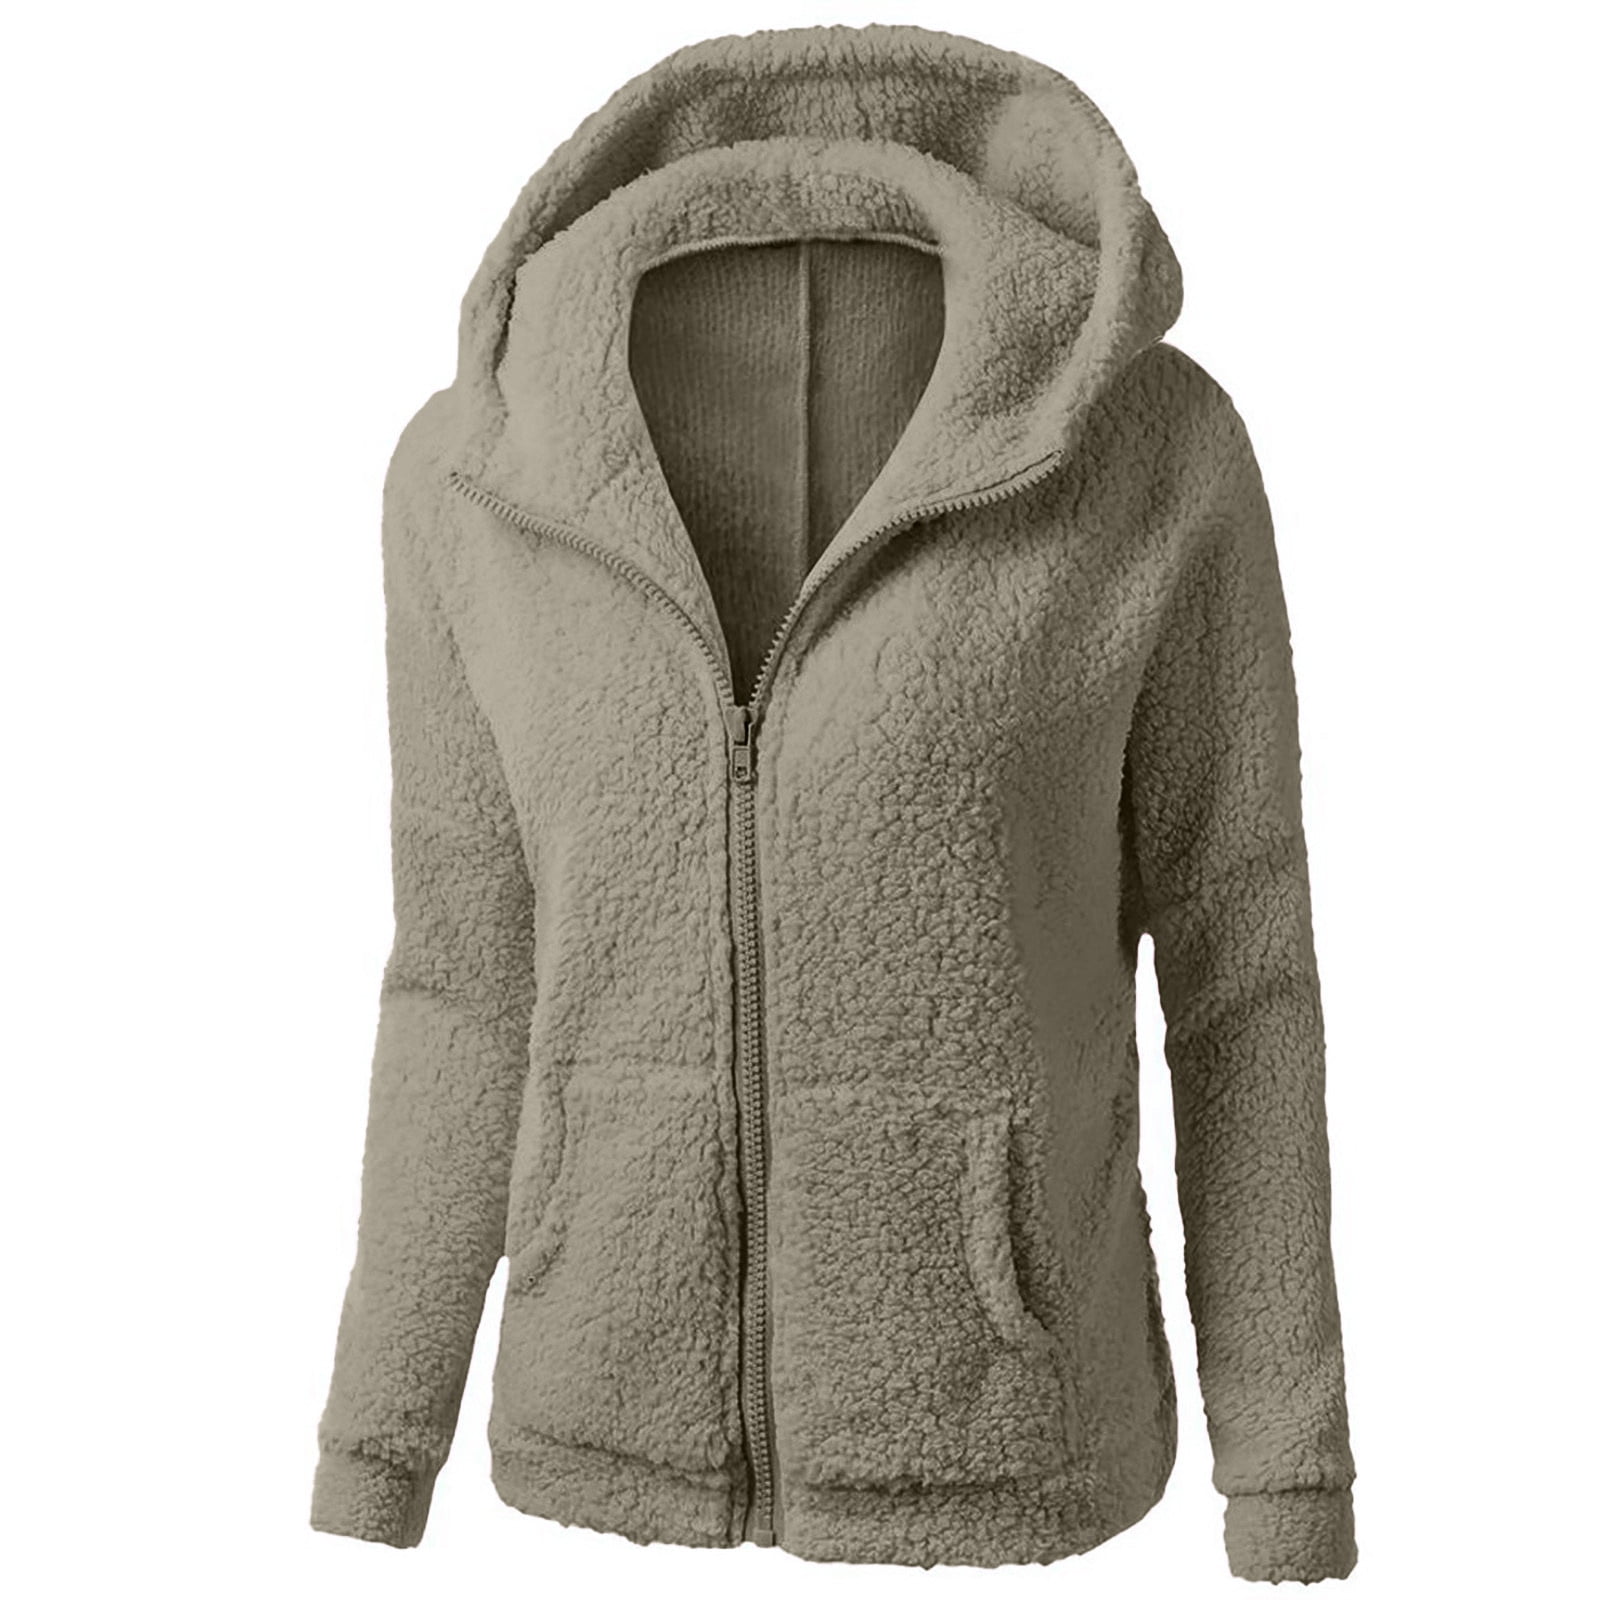 yievot Womens Sherpa Fleece Lined Hoodie Jackets Zip Up Warm